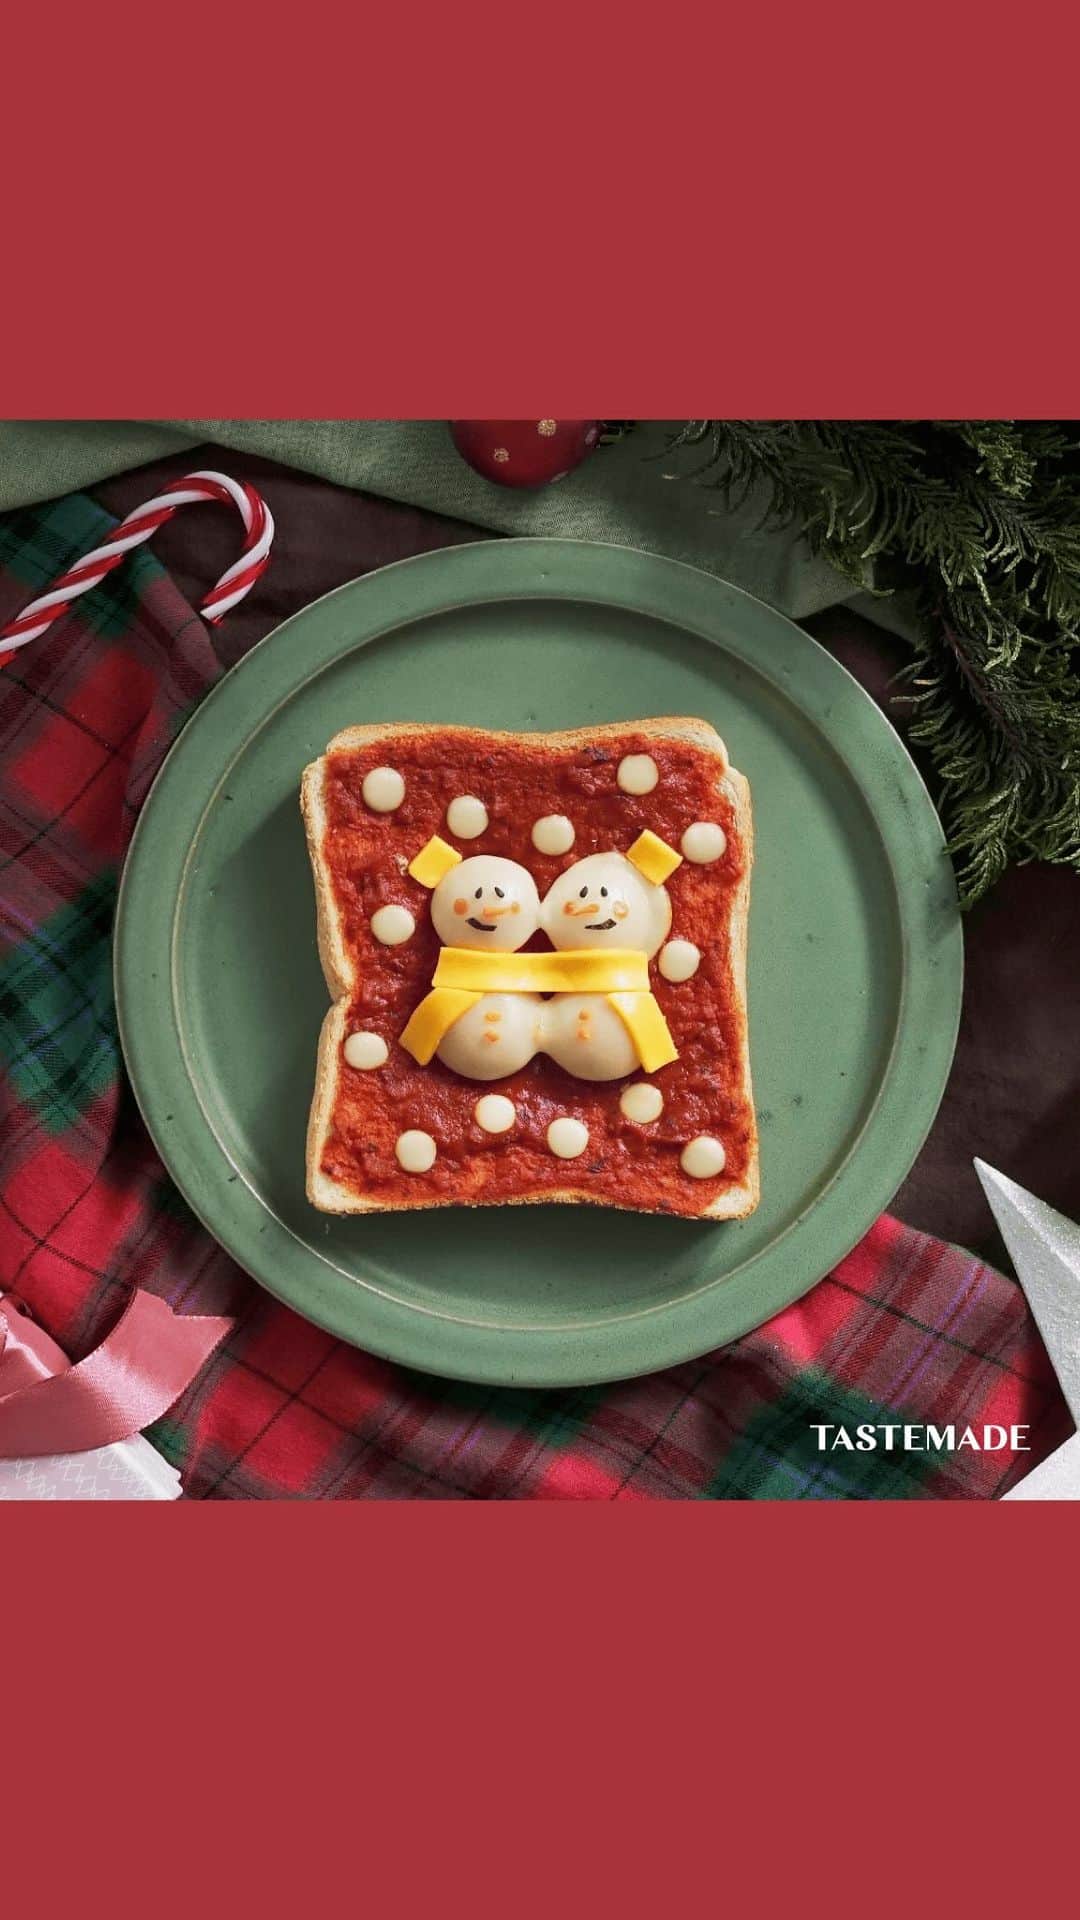 テイストメイドのインスタグラム：「【とろける可愛さ♡】ぷっくり雪だるまピザ⛄️Snowman Homemade Cheesy Tomato Pizza  いつものピザトーストをクリスマス仕様にアレンジ🎅🍕  ミニトマトの上にチーズを乗せたら、 あっという間に立体的な可愛い雪だるまが出来上がり💡 見た目も可愛いし作るのも簡単だから、みんなも作ってみてね🎄✨  ■材料 食パン 1枚 ピザソース 30g ミニトマト 2個 スライスモッツァレラチーズ 適量 スライスチェダーチーズ 適量 黒ごま 適量 人参 適量 海苔 適量  ■作り方 1. 食パンにピザソースを塗る。 2. ミニトマトを半分に切り、4つ雪だるまのように並べる。 3. ミニトマトより一回り大きいサイズにスライスモッツァレラチーズを切り、ミニトマトの上に乗せる。 4. さらに小さく丸く切ったチーズを雪だるまの周りに複数置き、トースターで3分ほど焼く。 5. スライスチェダーチーズでマフラー・帽子を作って置き、雪だるまの顔を海苔・黒ごま・人参でデコレーションして完成。  Ingredients: - Sliced bread: 1 piece - Pizza sauce: 30g - Cherry tomatoes: 2 - Sliced mozzarella cheese: as needed - Sliced cheddar cheese: as needed - Black sesame seeds: as needed - Carrot: as needed - Nori (seaweed): as needed  Steps: 1. Spread pizza sauce on the sliced bread. 2. Cut the cherry tomatoes in half and arrange them in the shape of a snowman, four in a row. 3. Slice the mozzarella cheese slightly larger than the cherry tomatoes and place them on top. 4. Additionally, place small, round slices of cheese around the snowman and toast in a toaster for about 3 minutes. 5. Create a scarf and hat with sliced cheddar cheese, and decorate the snowman’s face with nori, black sesame seeds, and carrot. The snowman pizza is now complete!  #テイストメイド #料理 #cooking #簡単レシピ #pizza #おうちごはん #おうちカフェ #チーズ #チーズレシピ  #ヘルシーレシピ #冬 #クリスマス料理 #toast #ピザ #christmasdinner #ピザレシピ #ピザ作り #ピザトースト #トースト #トーストアレンジ  #ホームベーカリー #パン #パン作り  #トマト  #クリスマス #クリスマスパーティー #雪だるま #snowman #christmas #christmasparty」